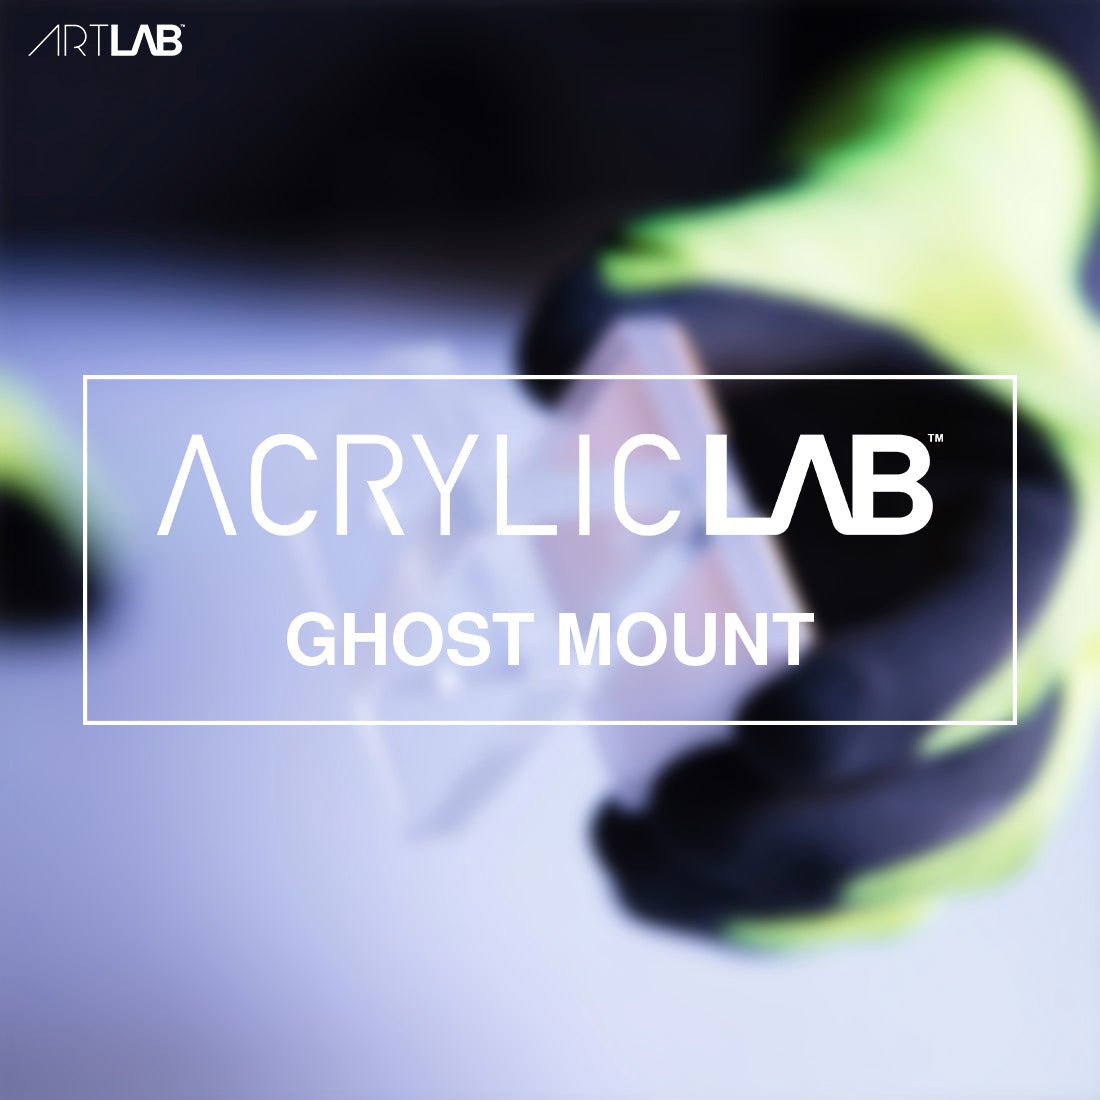 ACRYLIC Ghost Mounts